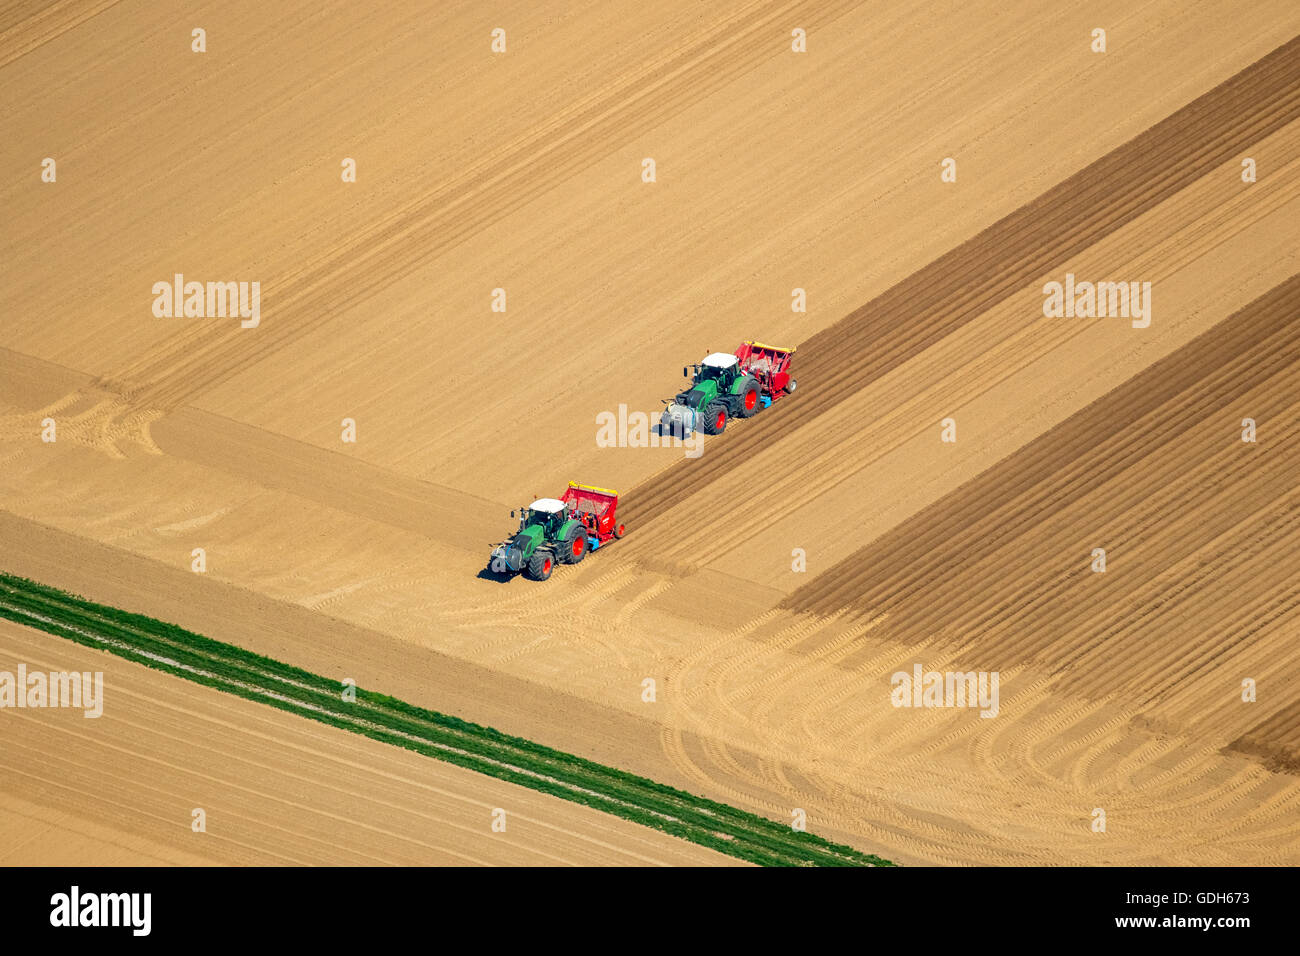 Vue aérienne, tracteurs dans un champ, de terres arables, le hersage, l'ensemencement et Linnich, Bas-rhin, Rhénanie du Nord-Westphalie, Allemagne Banque D'Images